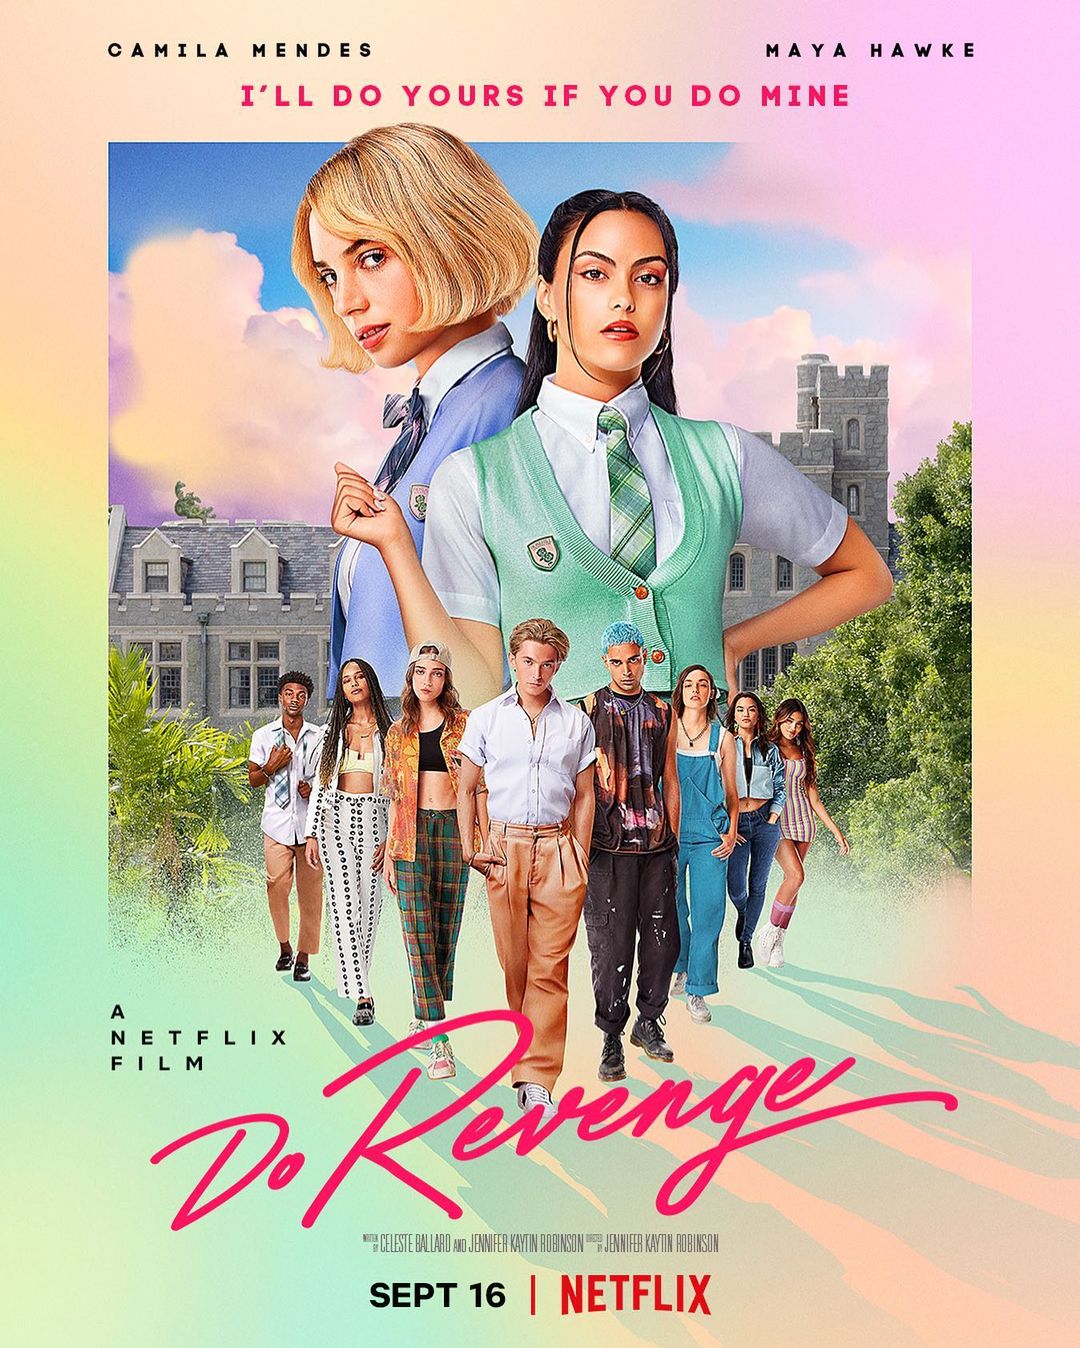 Il poster di "Do Revenge", il film in uscita su Netflix il prossimo 16 settembre, diretto da Jennifer Kaytin Robinson